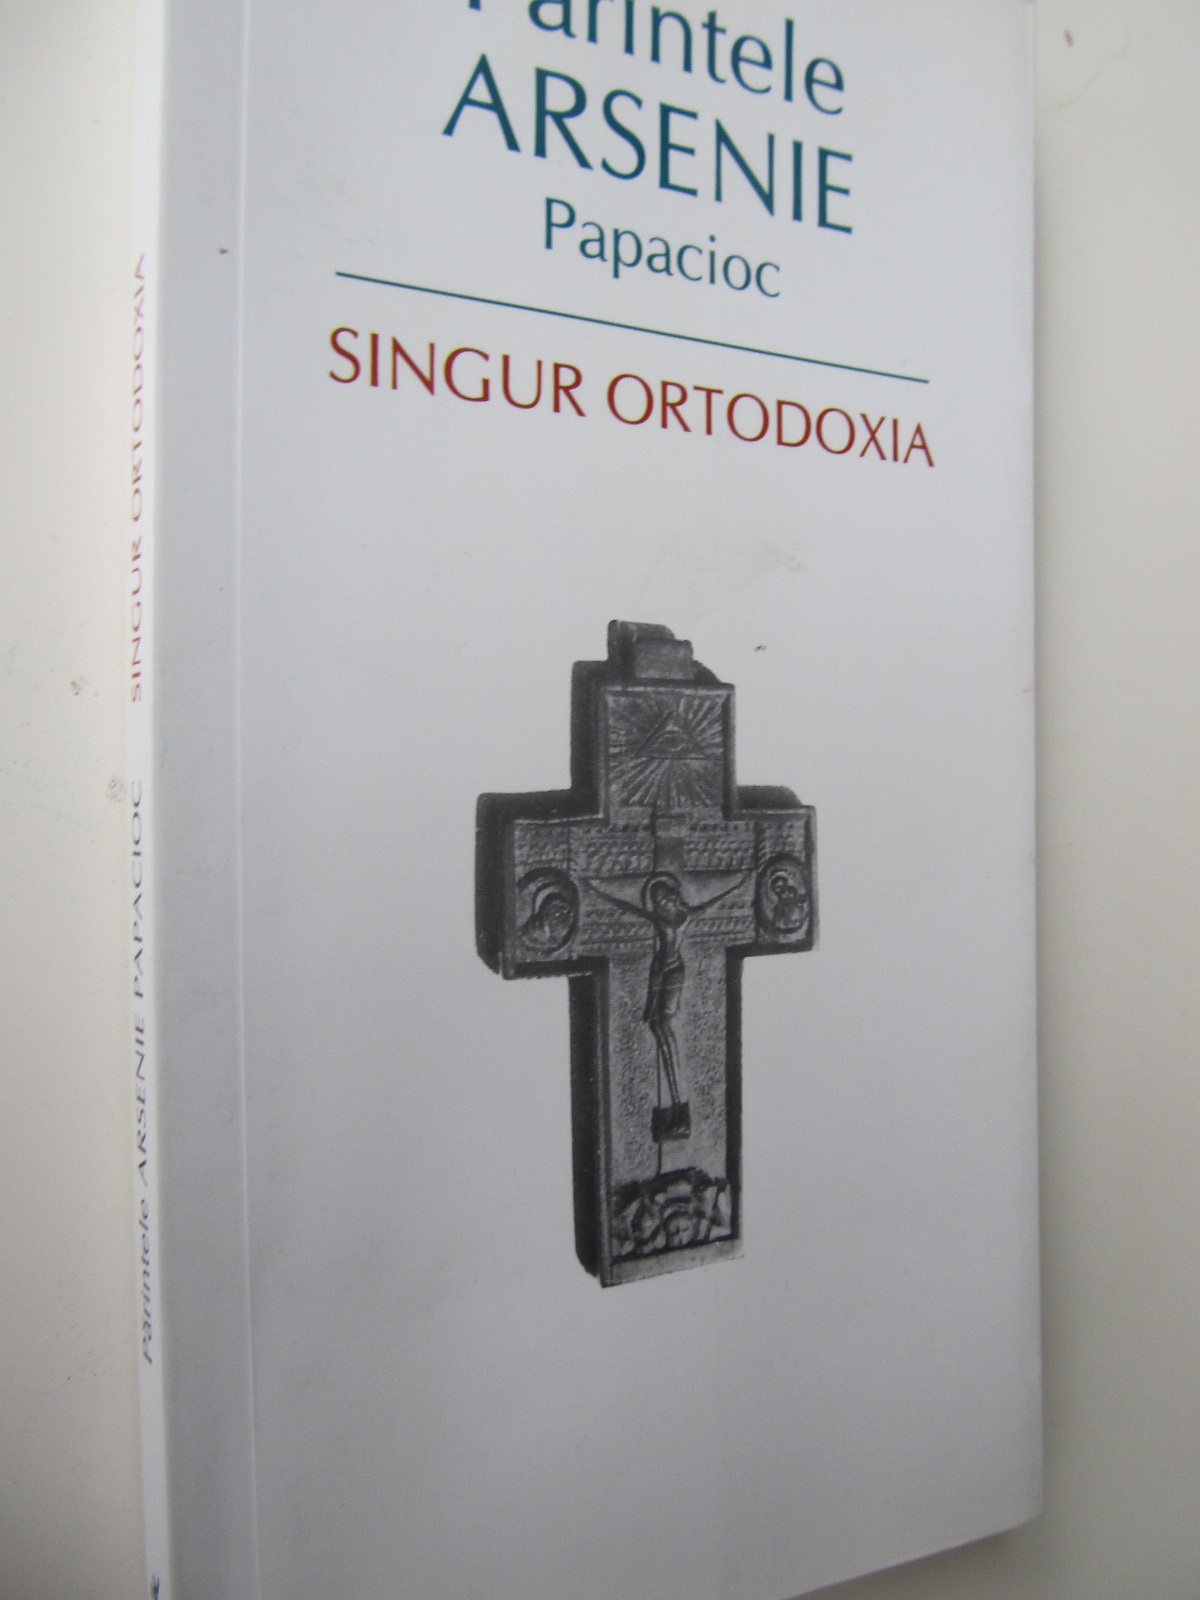 Singur ortodoxia - Parintele Arsenie Papacioc | Detalii carte